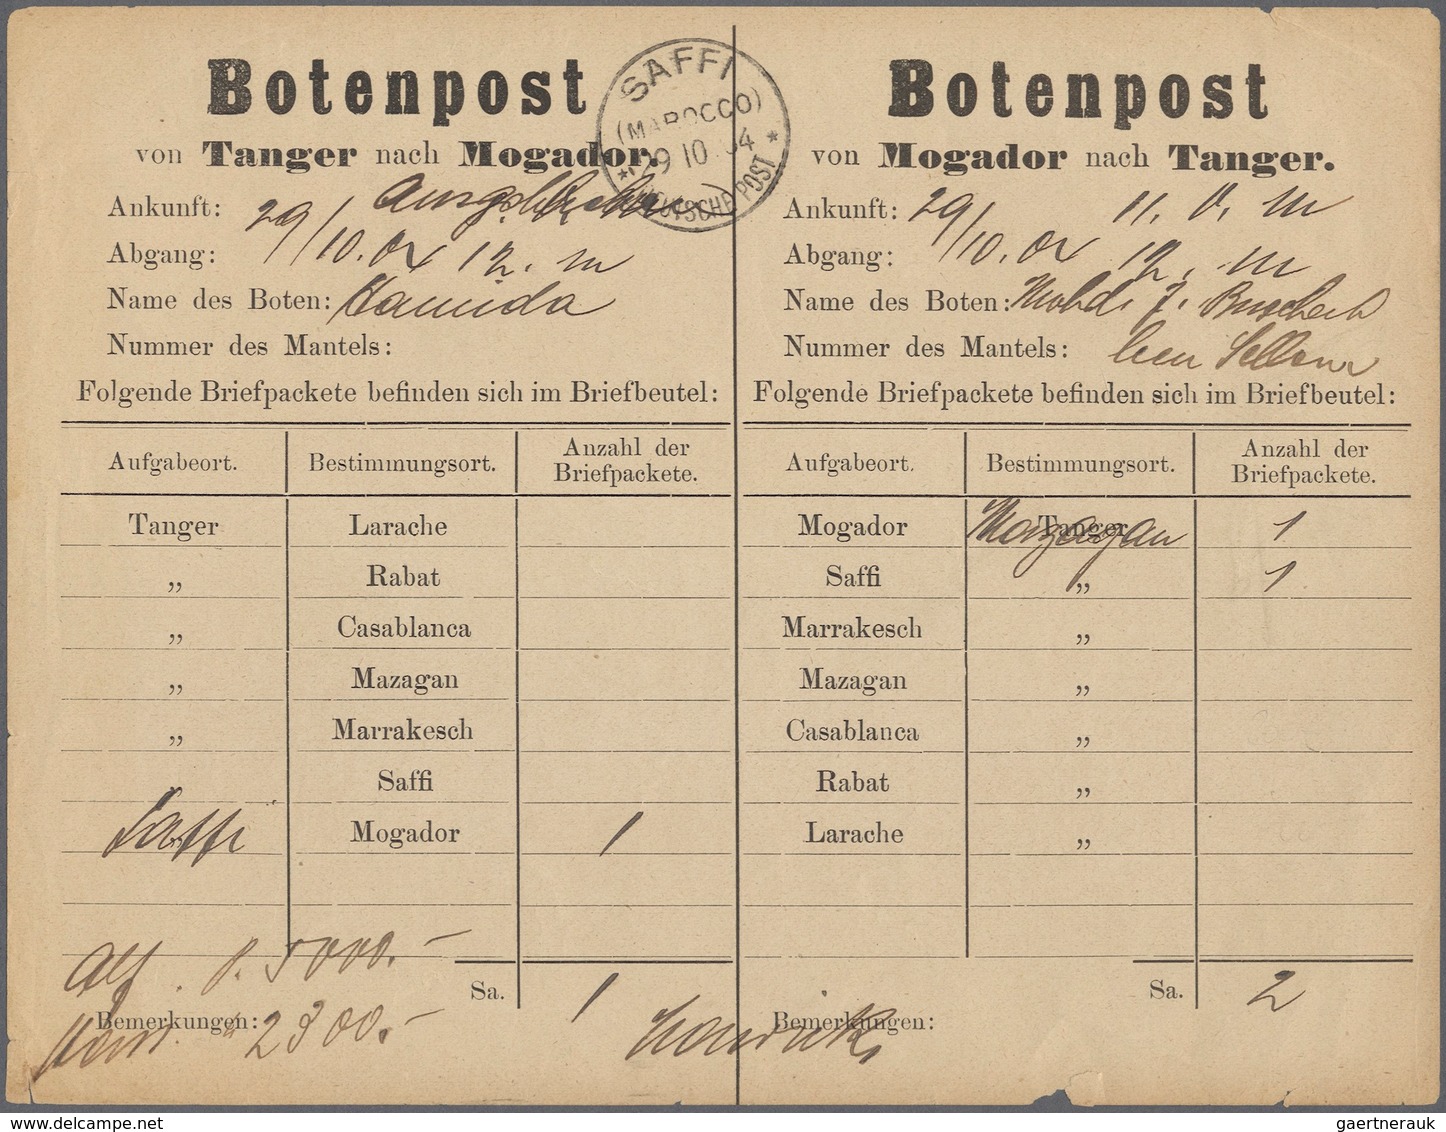 31827 Deutsche Auslandspostämter: 1900 - 1915 (ca.), Posten von 27 Belegen und einigen Briefstücken ab Vor